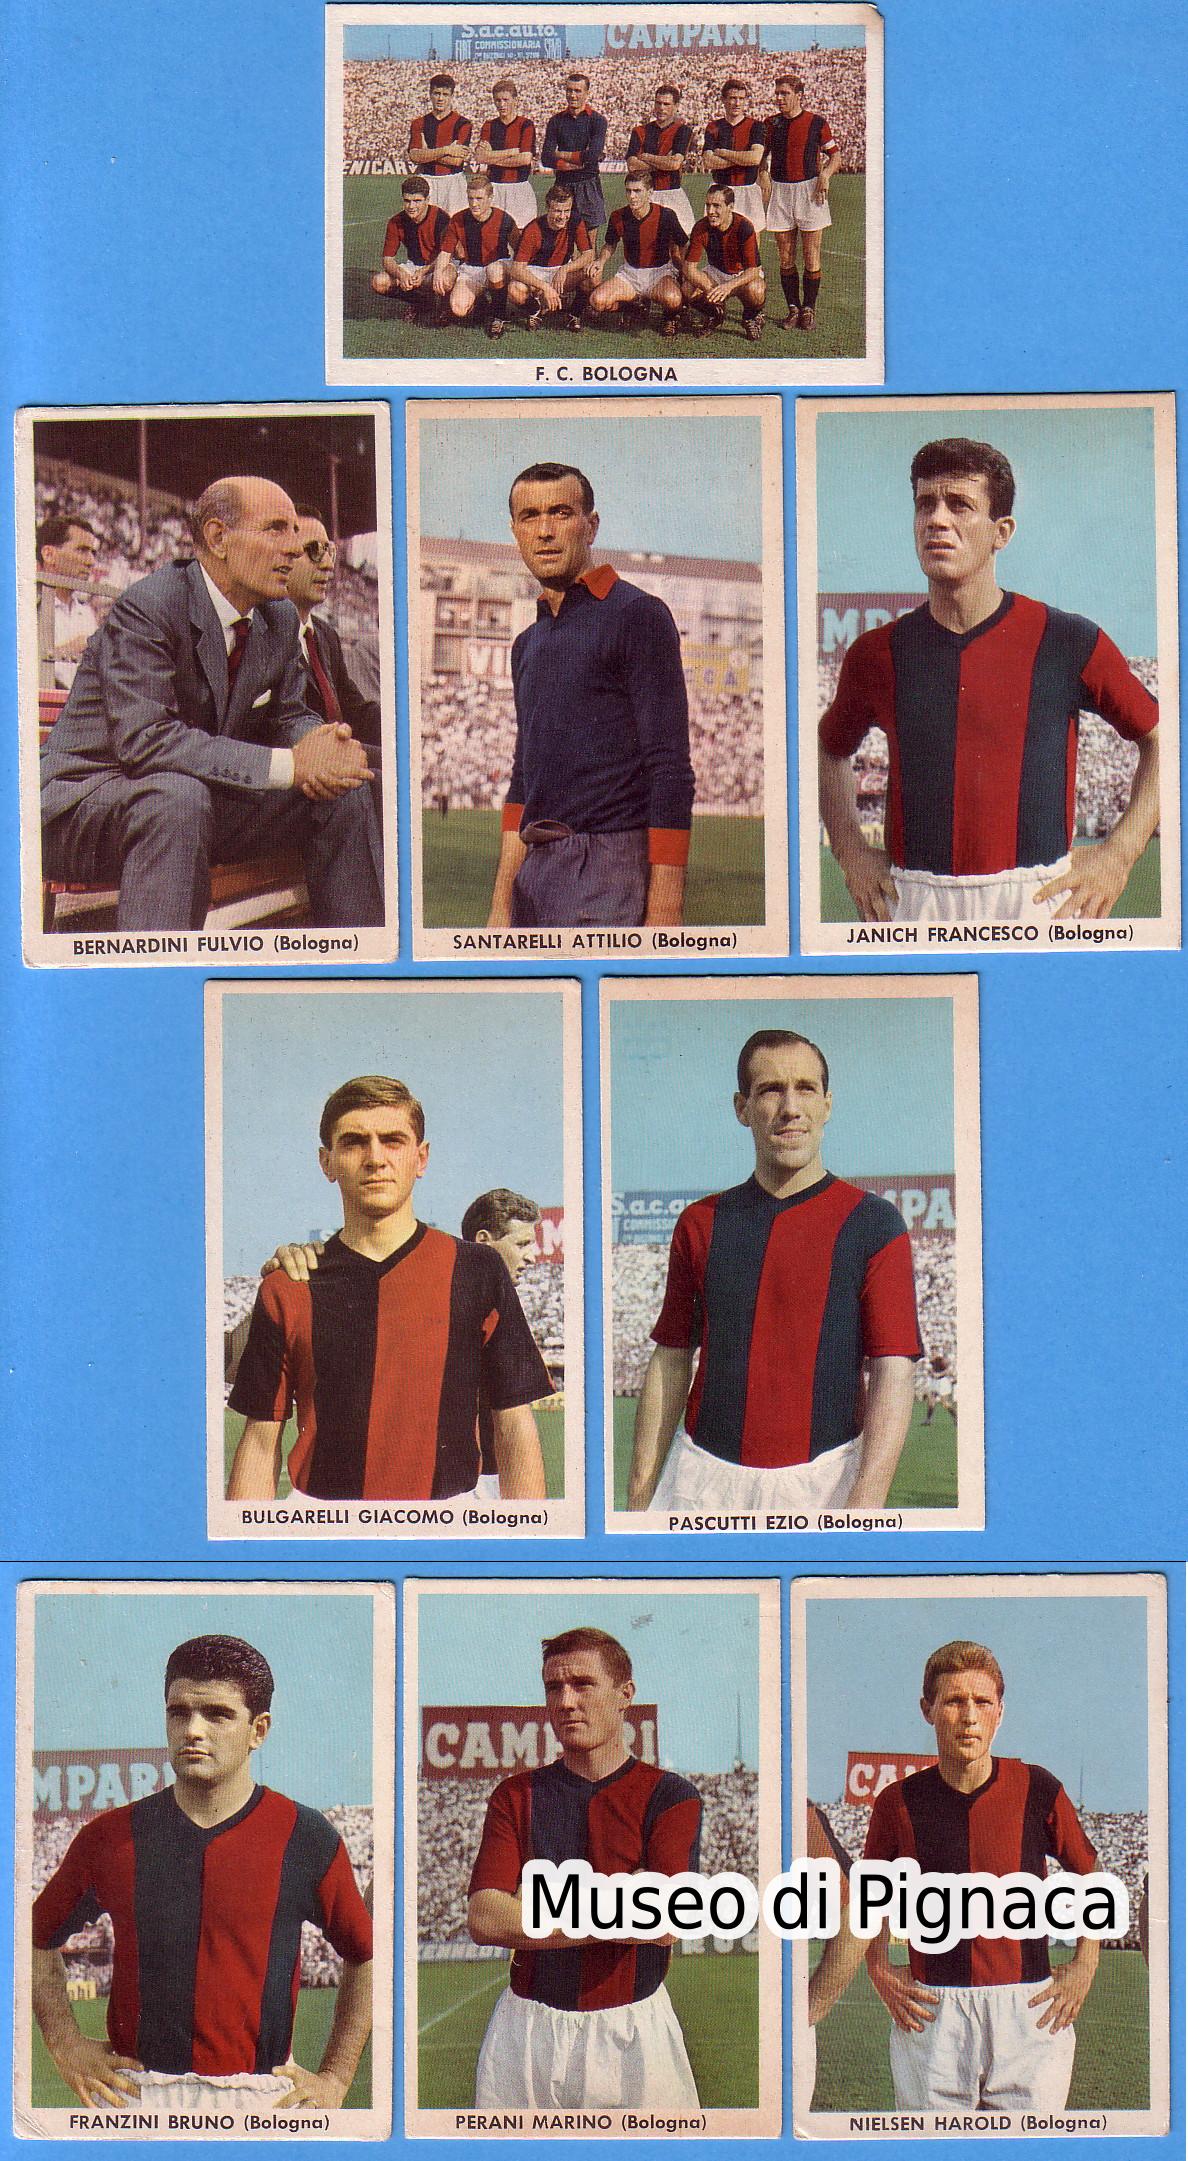 SIDAM (Torino) - 1961-62 figurine cartonate Bologna FC